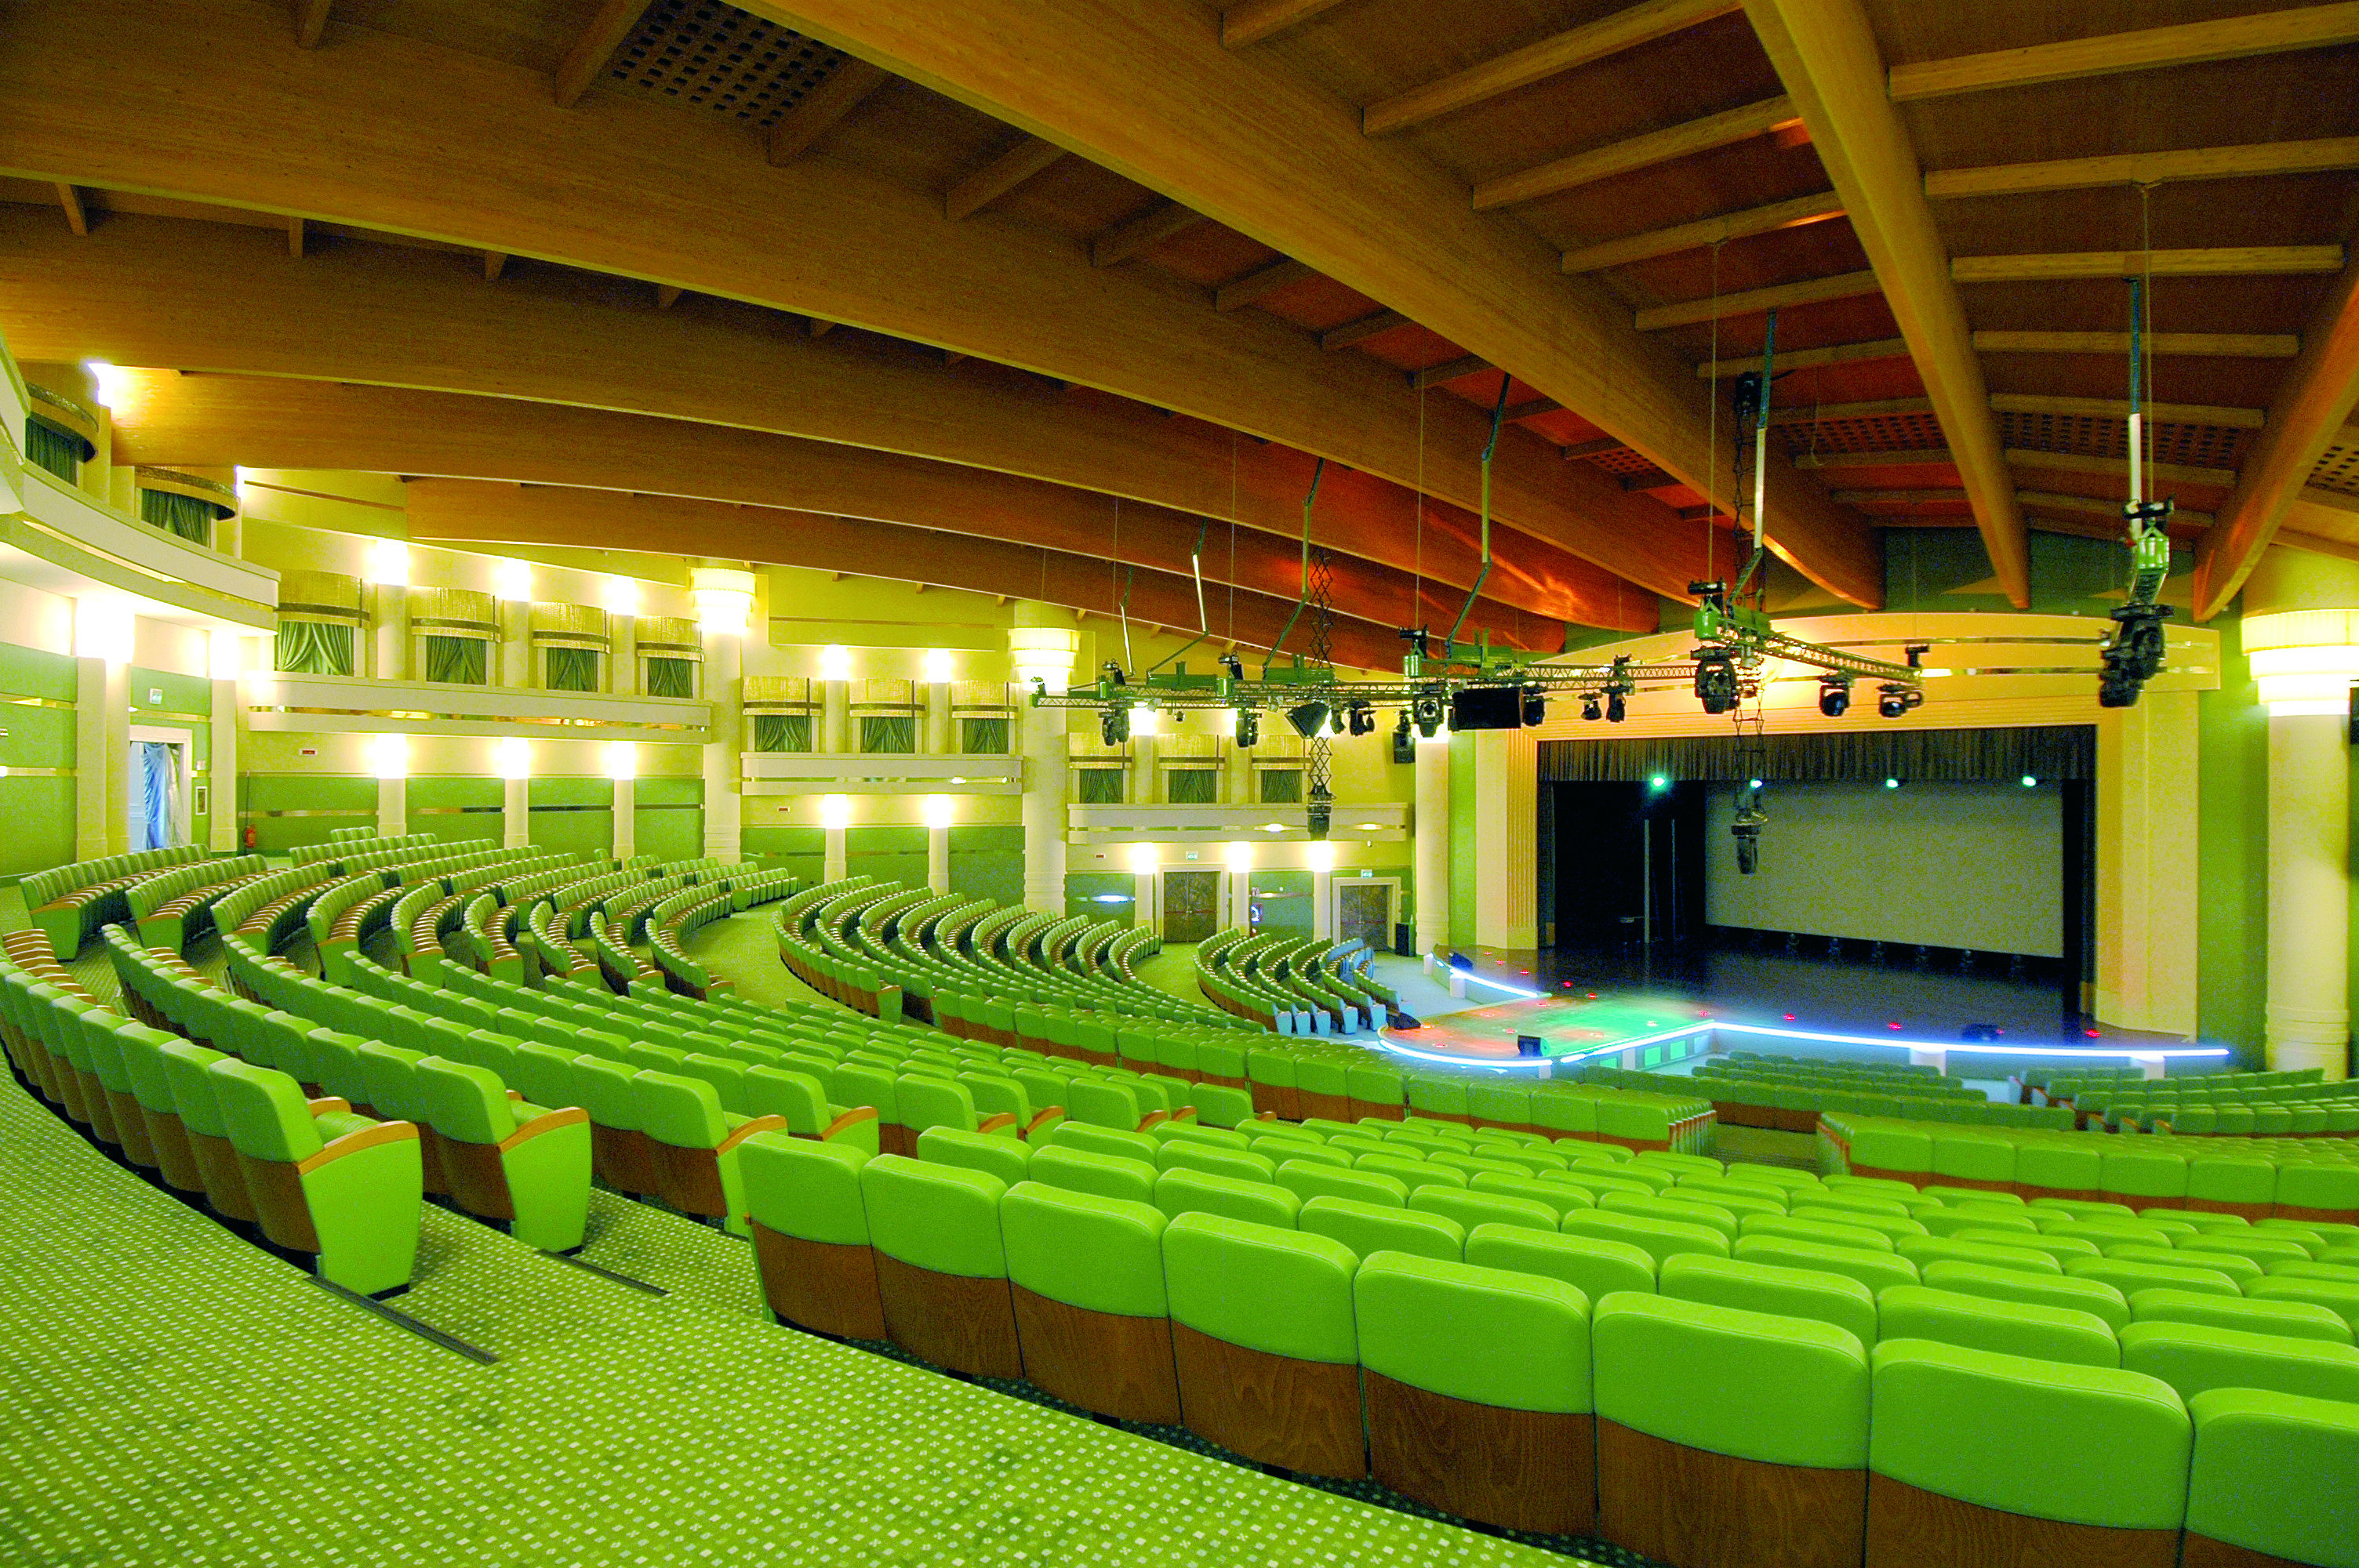 Gard Theatre 06